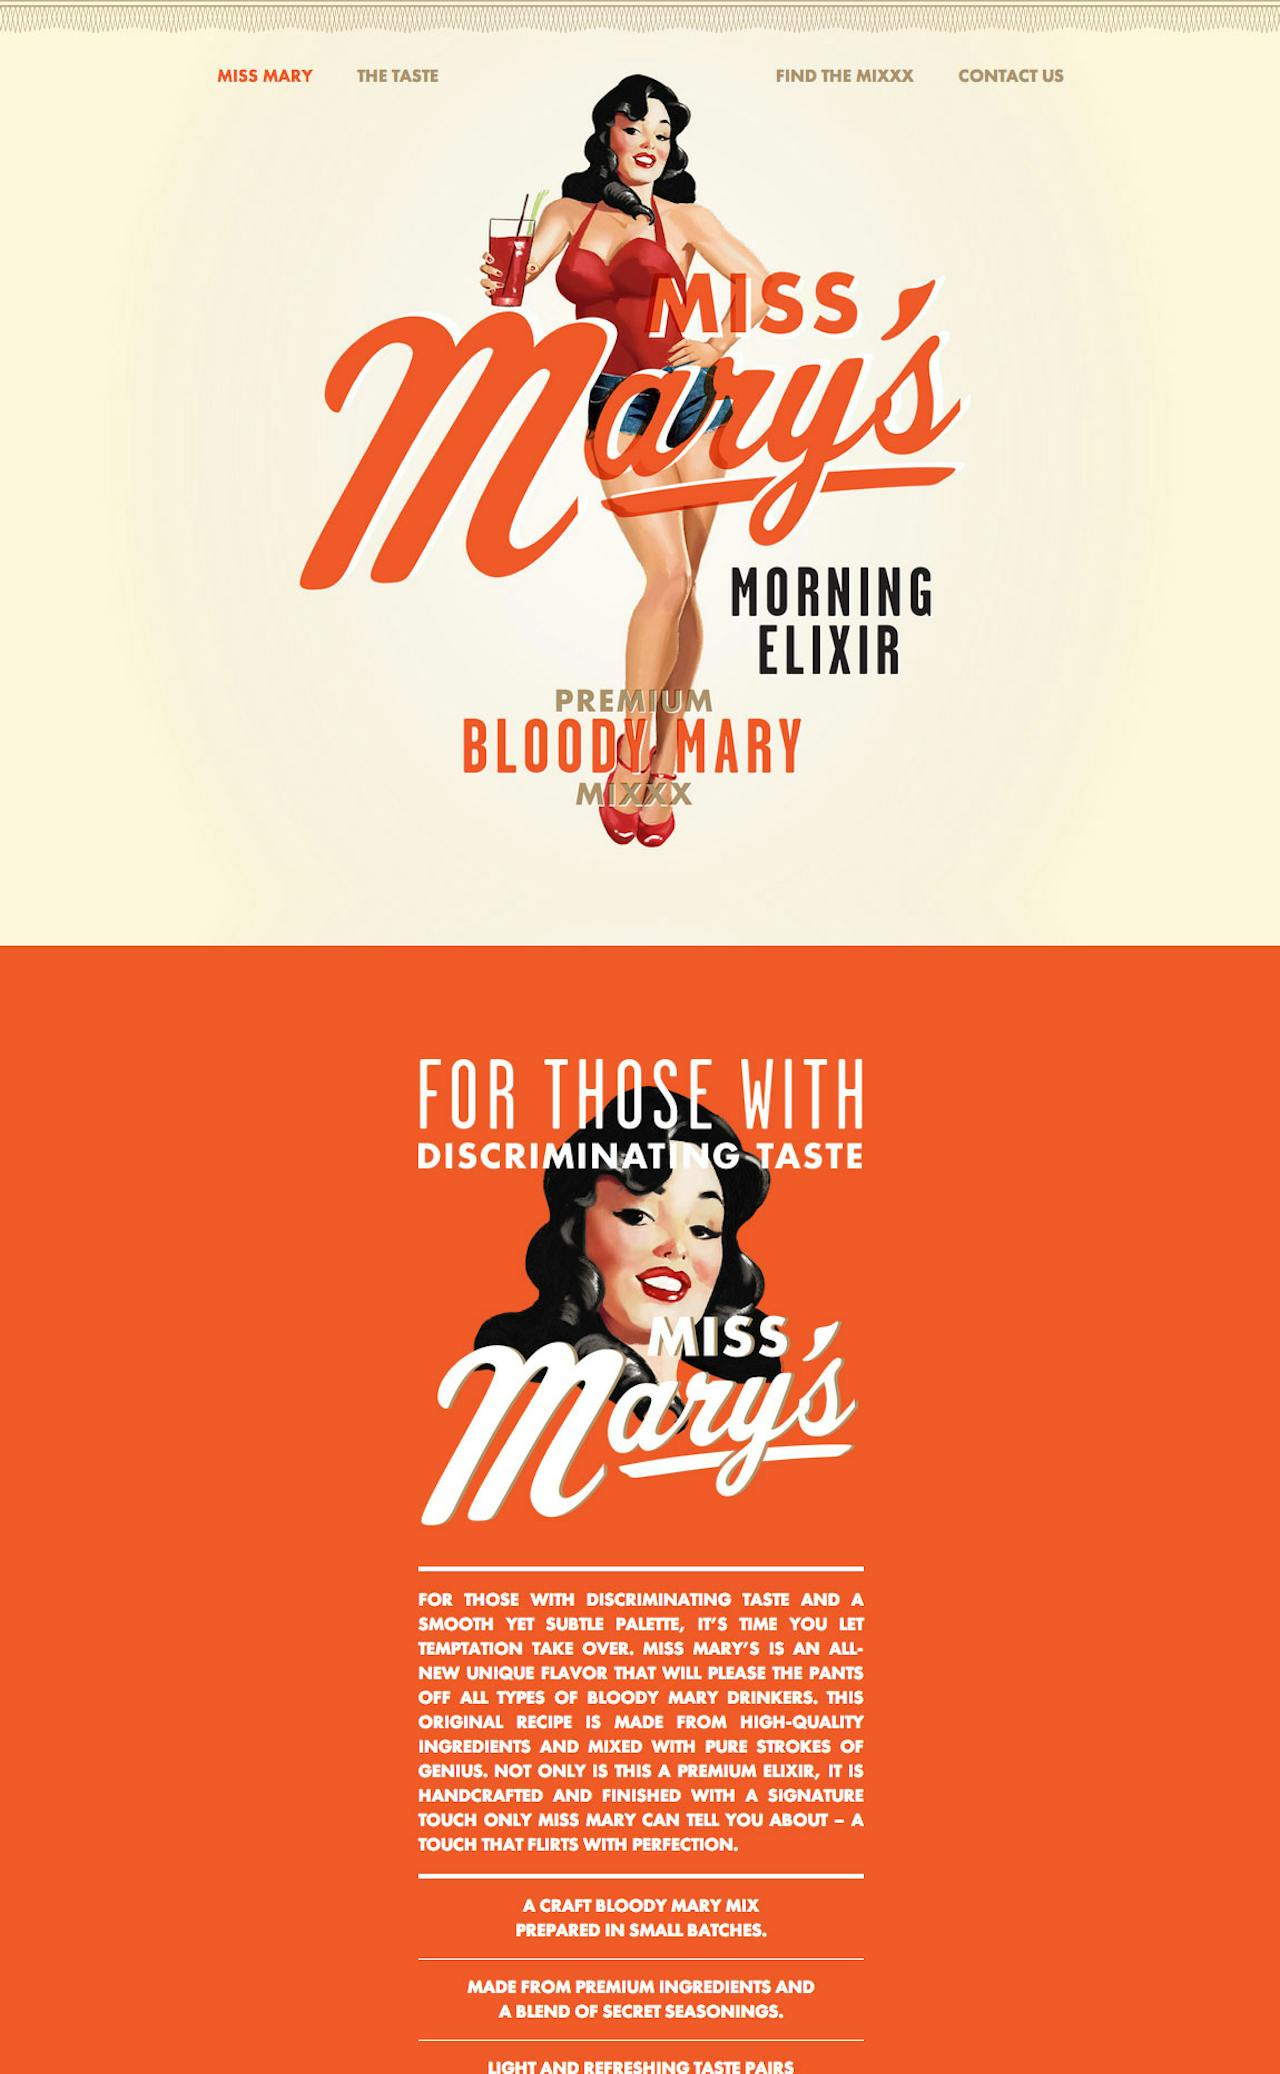 Miss Mary’s Morning Elixir Website Screenshot